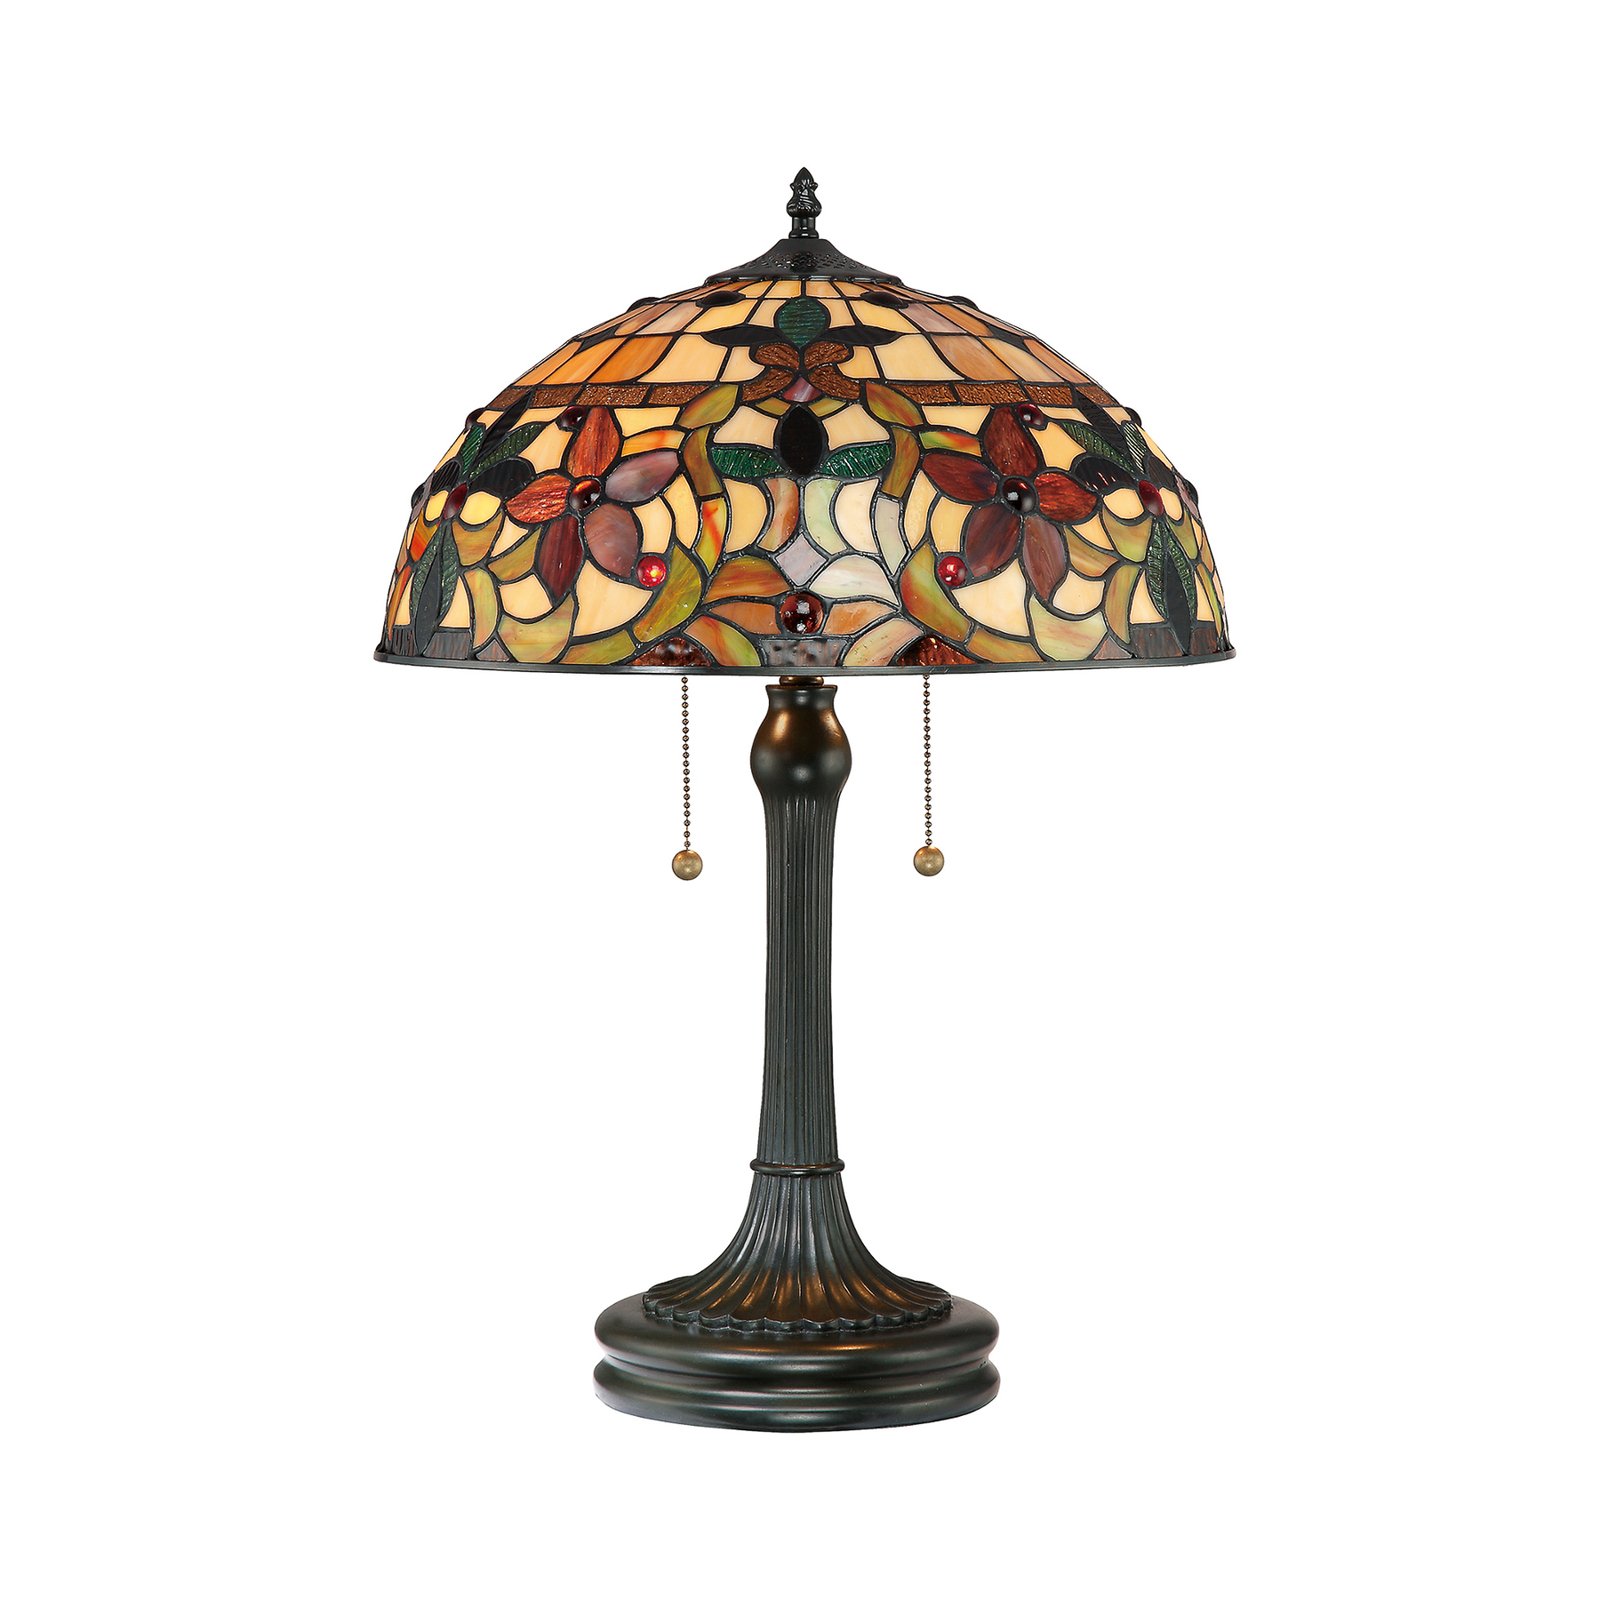 Kami Tiffany style table lamp